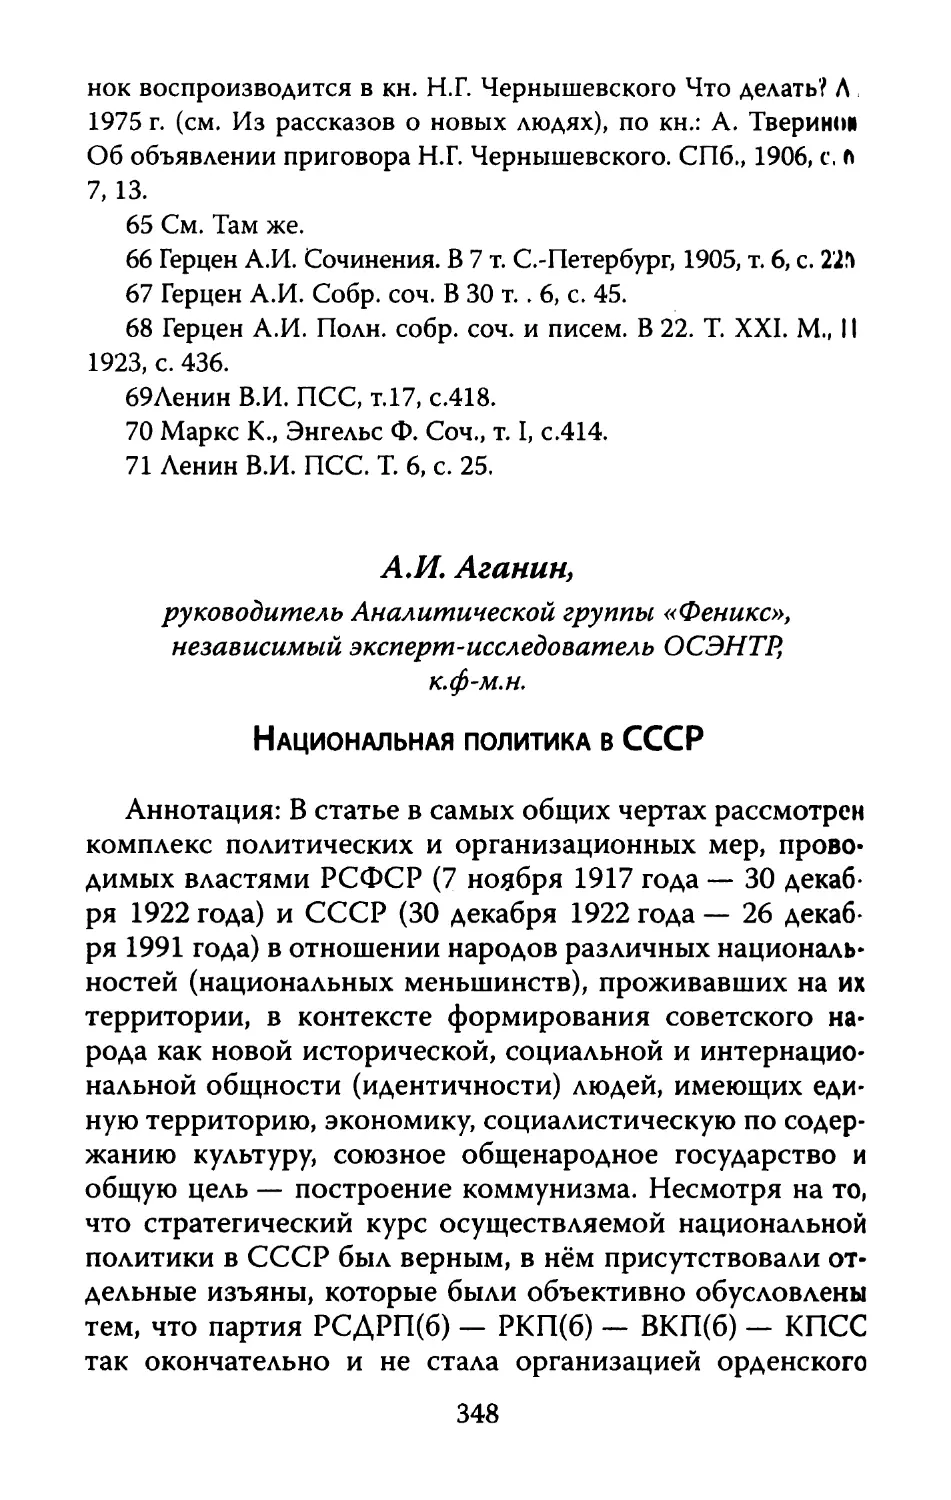 А.И. Аганин. Национальная политика в СССР